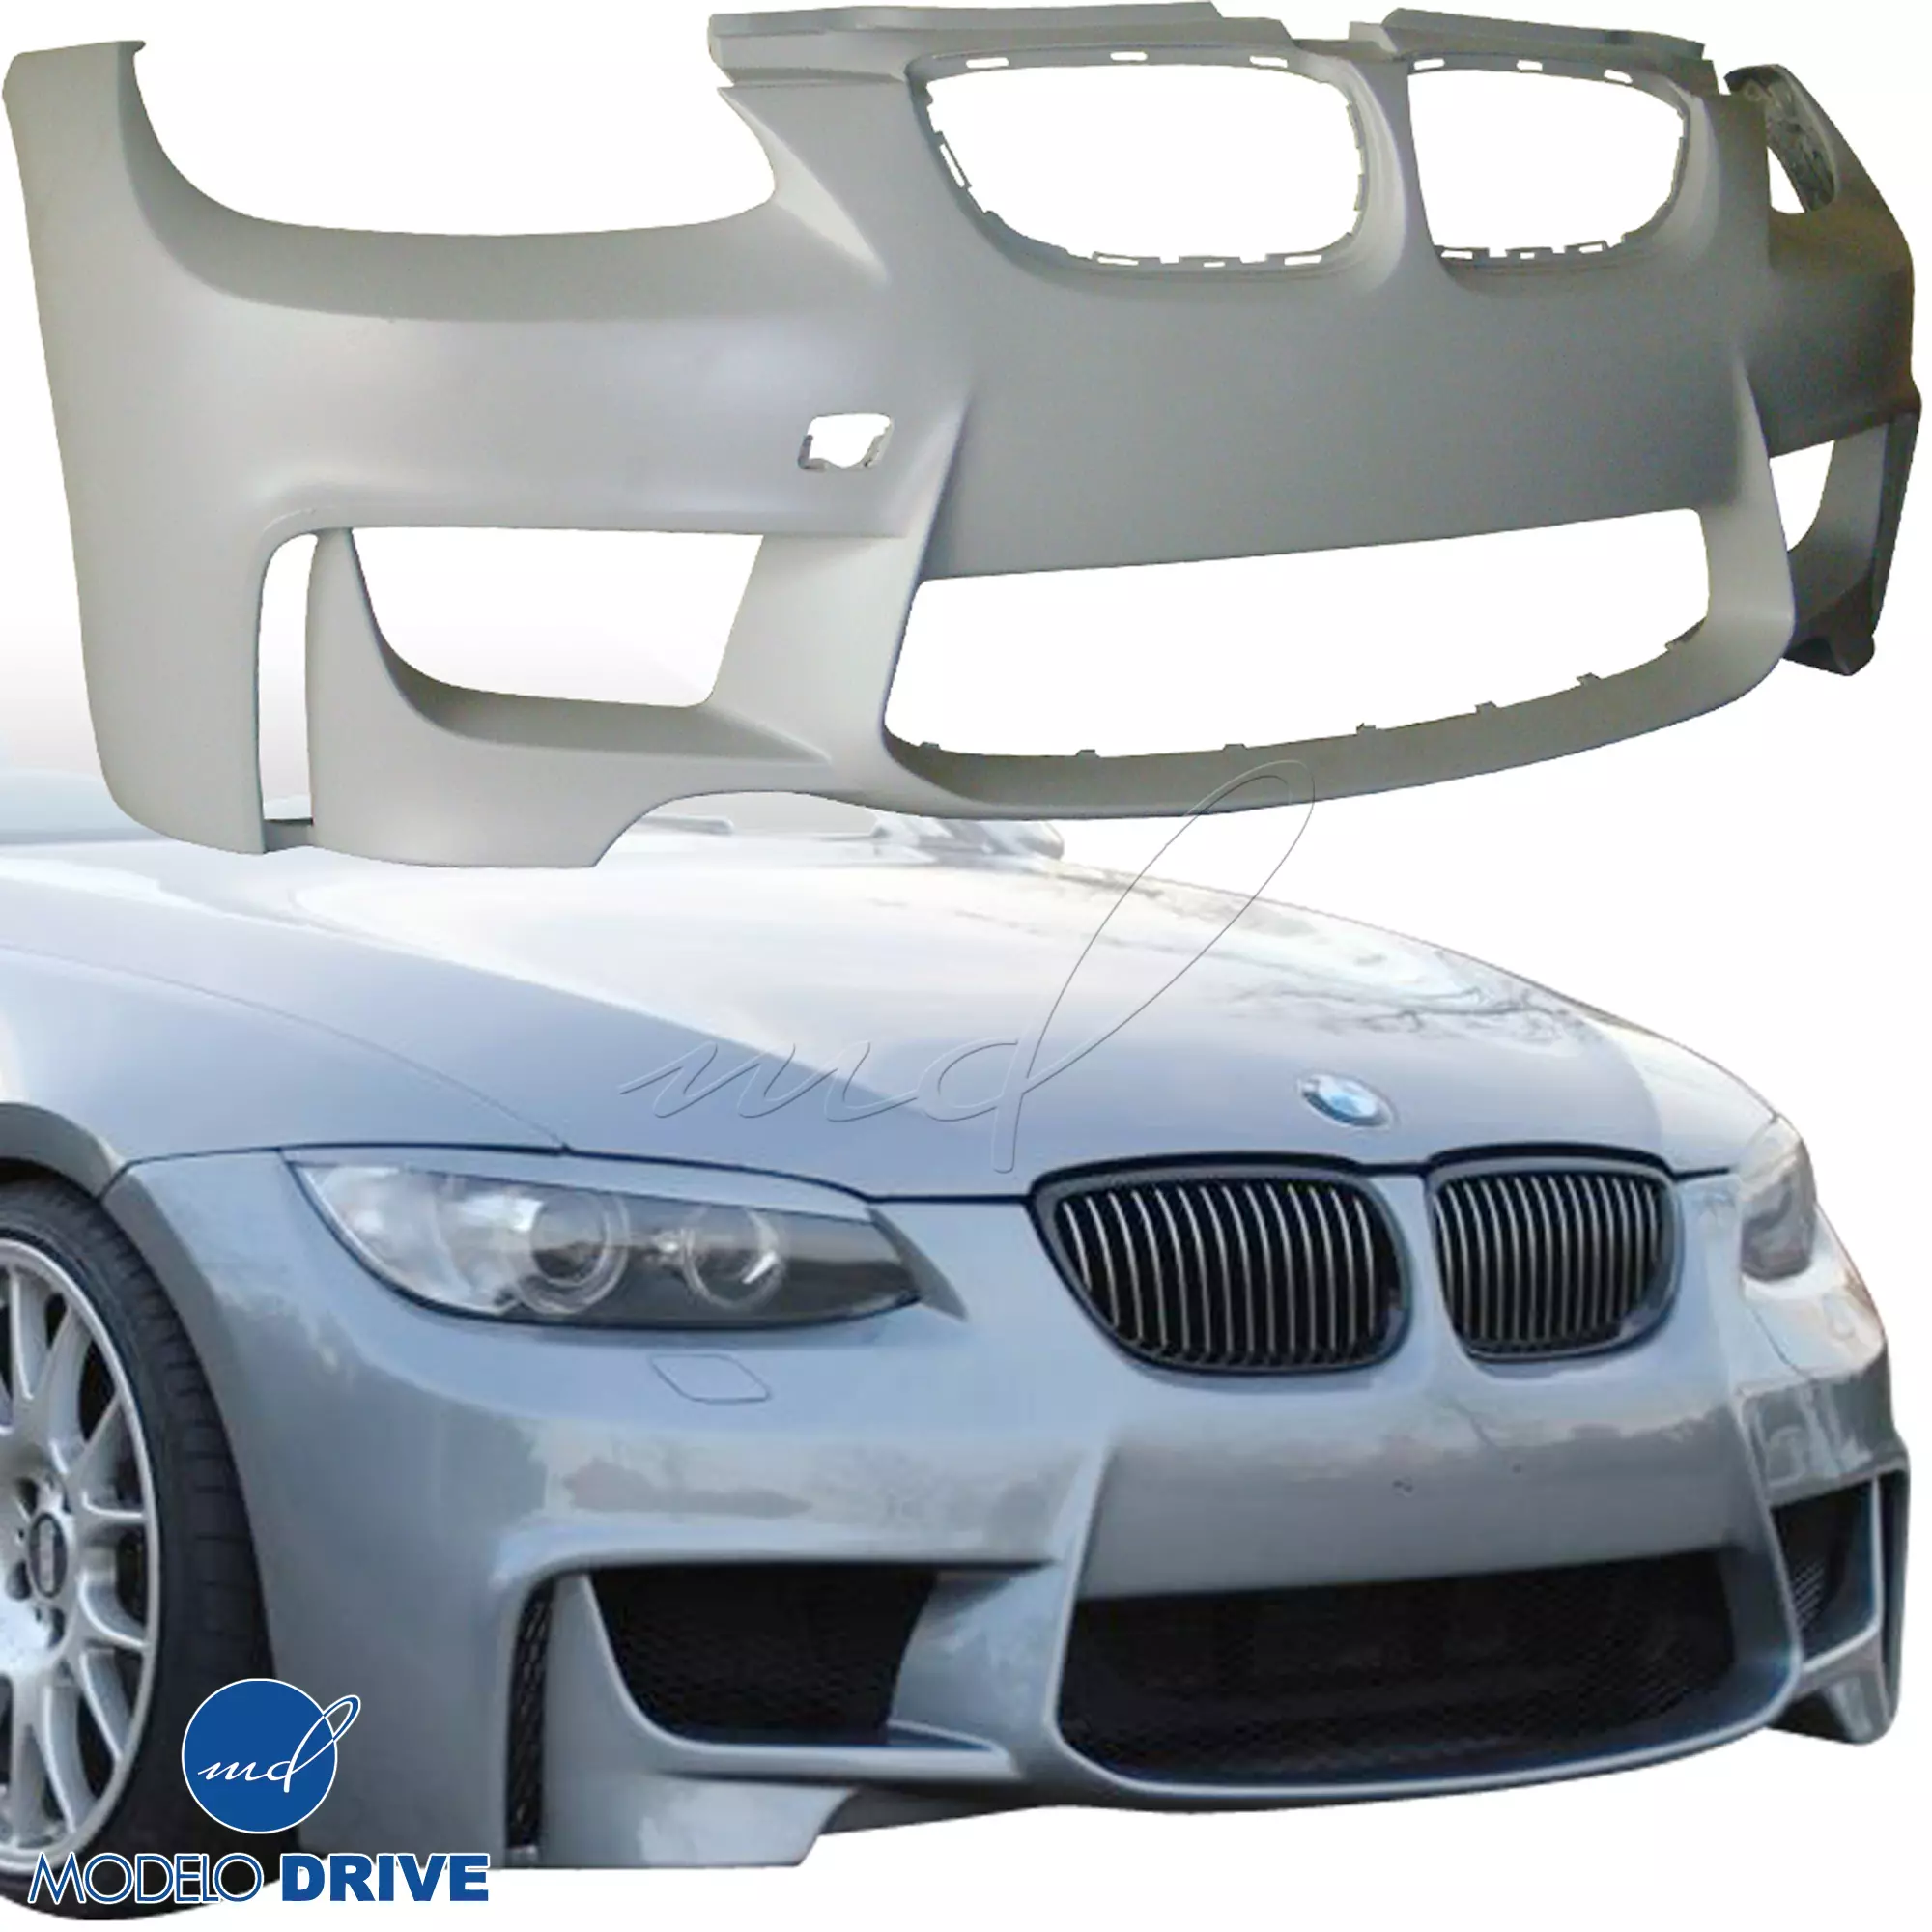 ModeloDrive FRP 1M-Style Body Kit 4pc > BMW 3-Series E92 2007-2010 > 2dr - Image 16